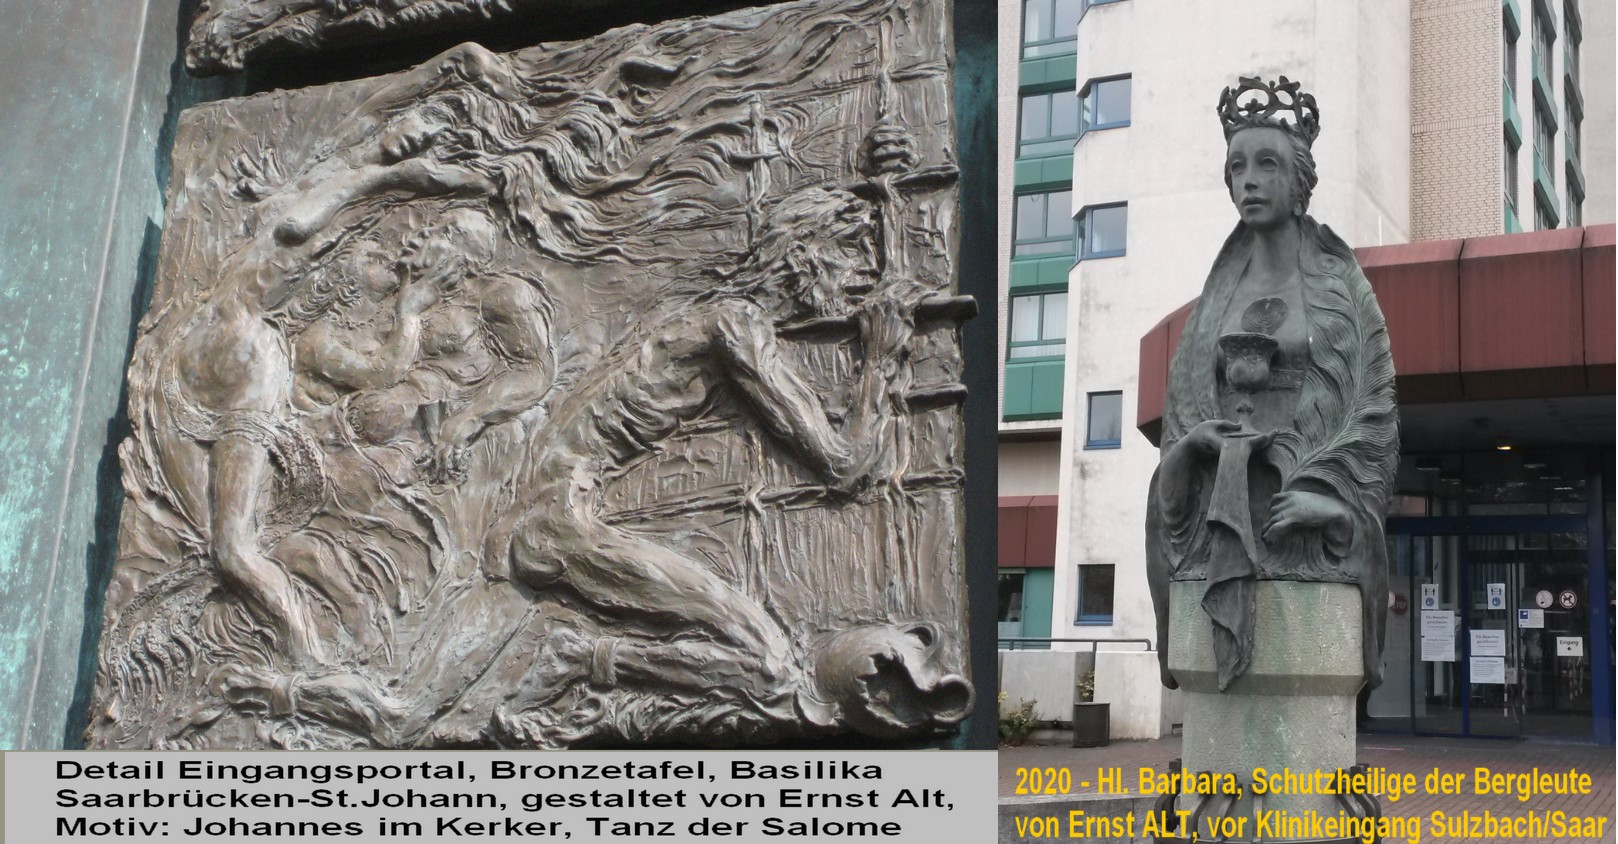 2 Plastiken von Ernst ALT - Detail, Bronzetafel am Portal der Basilika Saarbruecken-St.Johann und Statue der Hl. Barbara vor der Klinik in Sulzbach/Saar